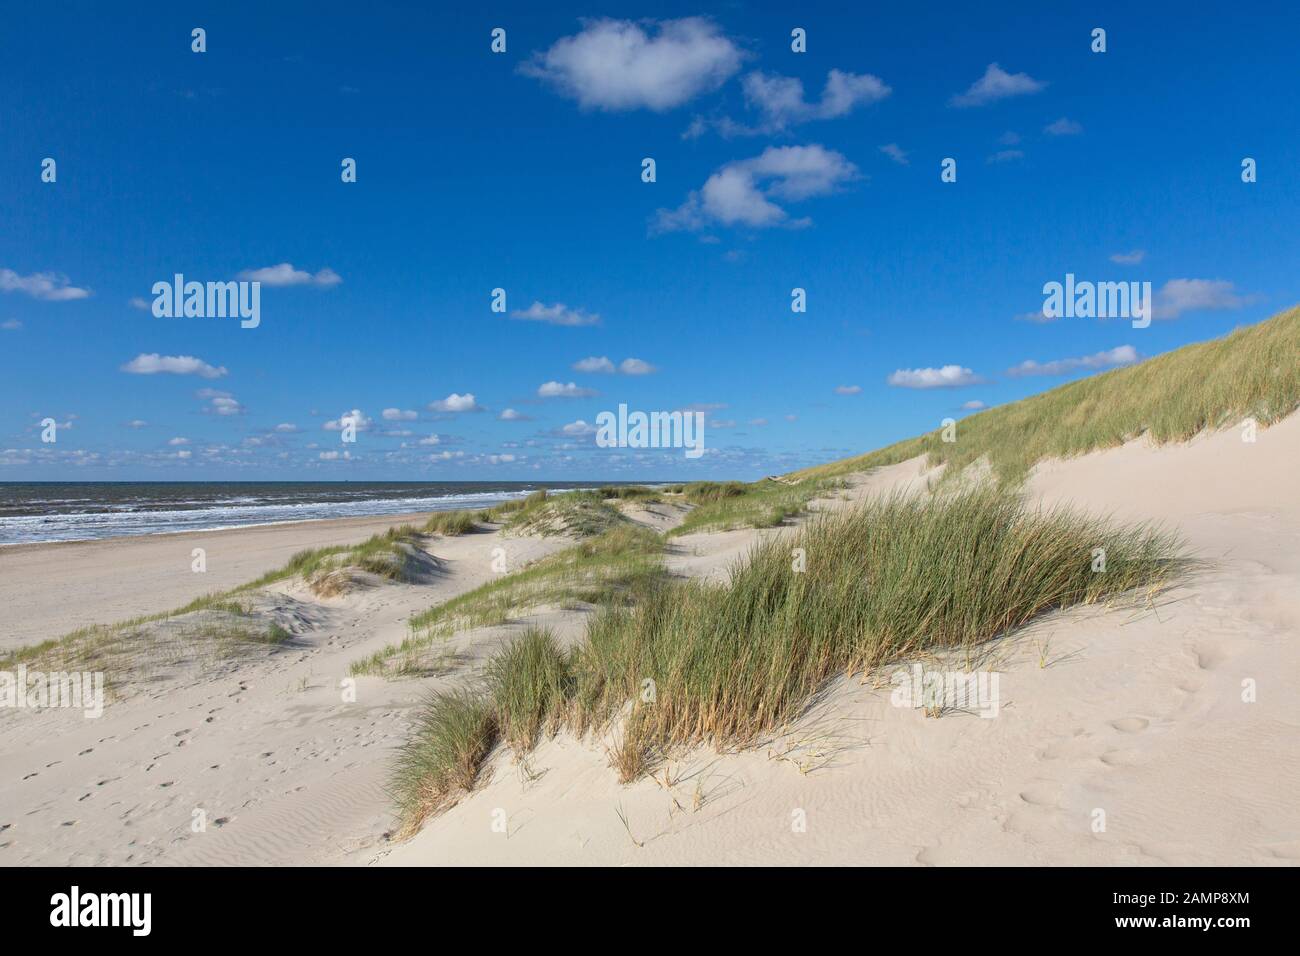 Plage et marram européen herbe / plage (Ammophila arenaria) dans les dunes de Texel, l'île frisonne de l'Ouest dans la mer des Wadden, aux Pays-Bas Banque D'Images